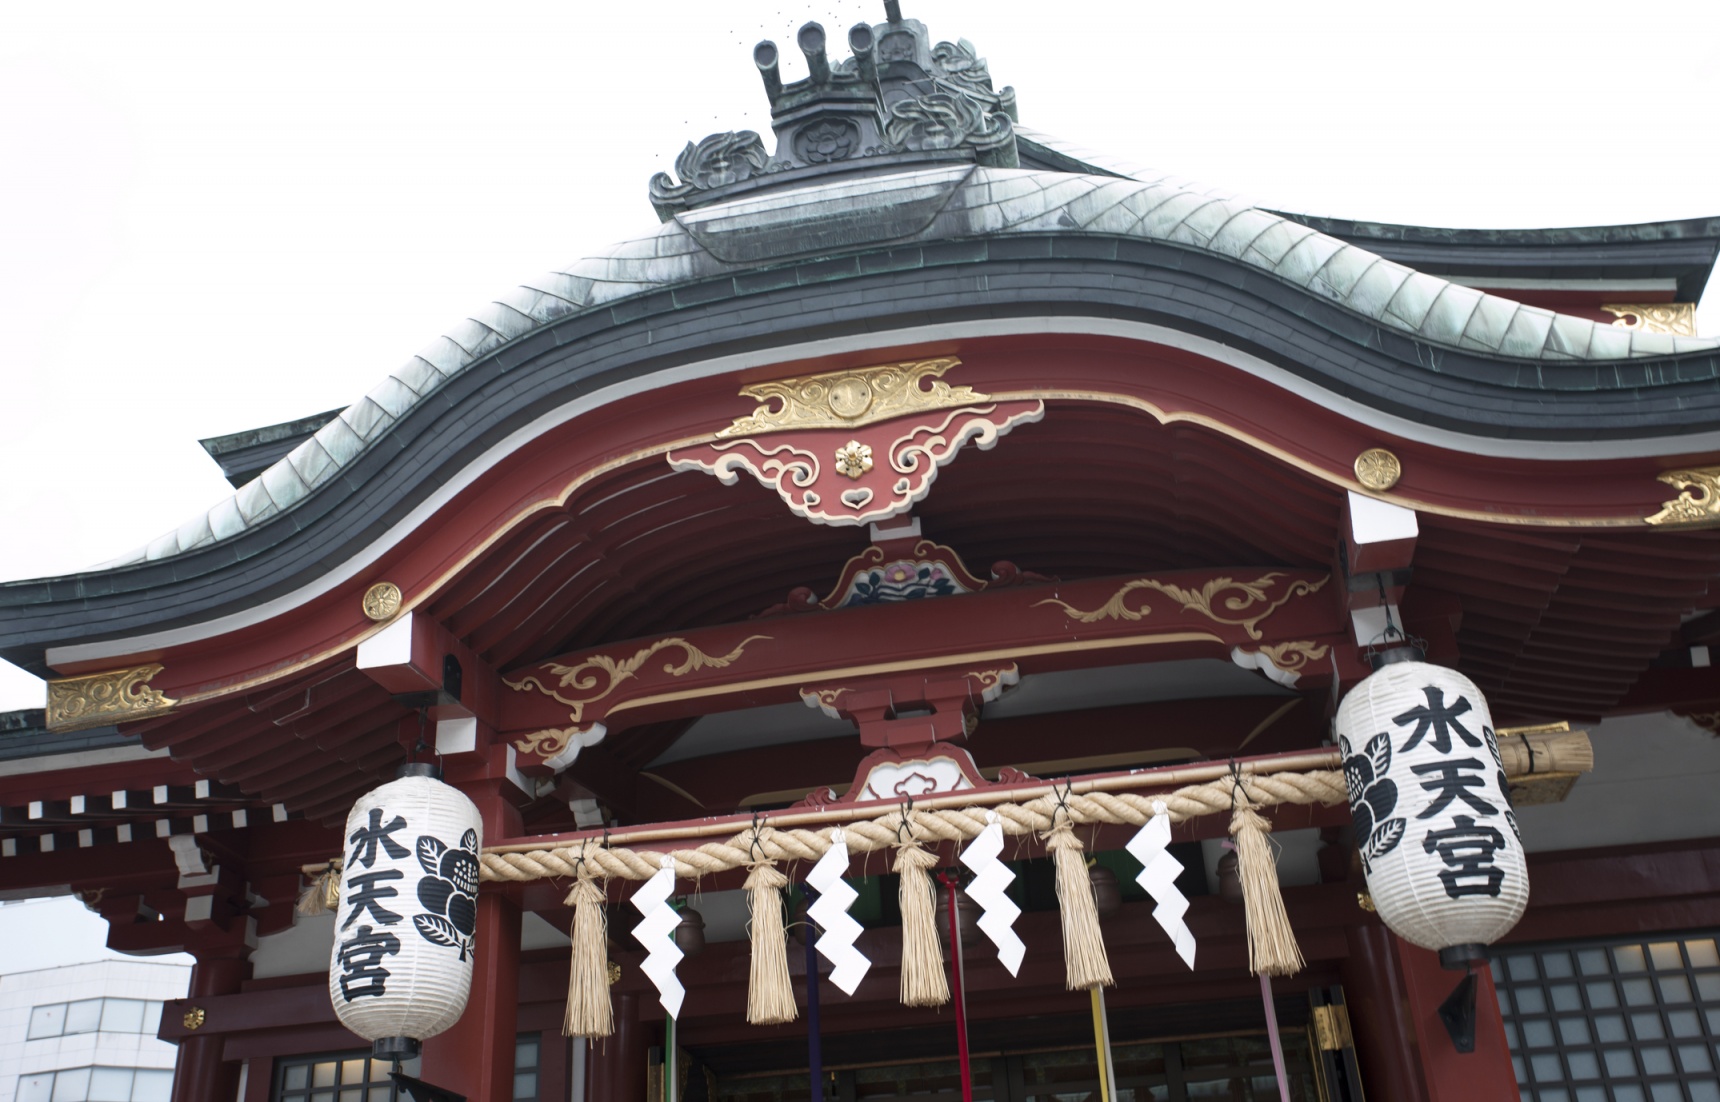 遍布日本各地的神社——水天宮